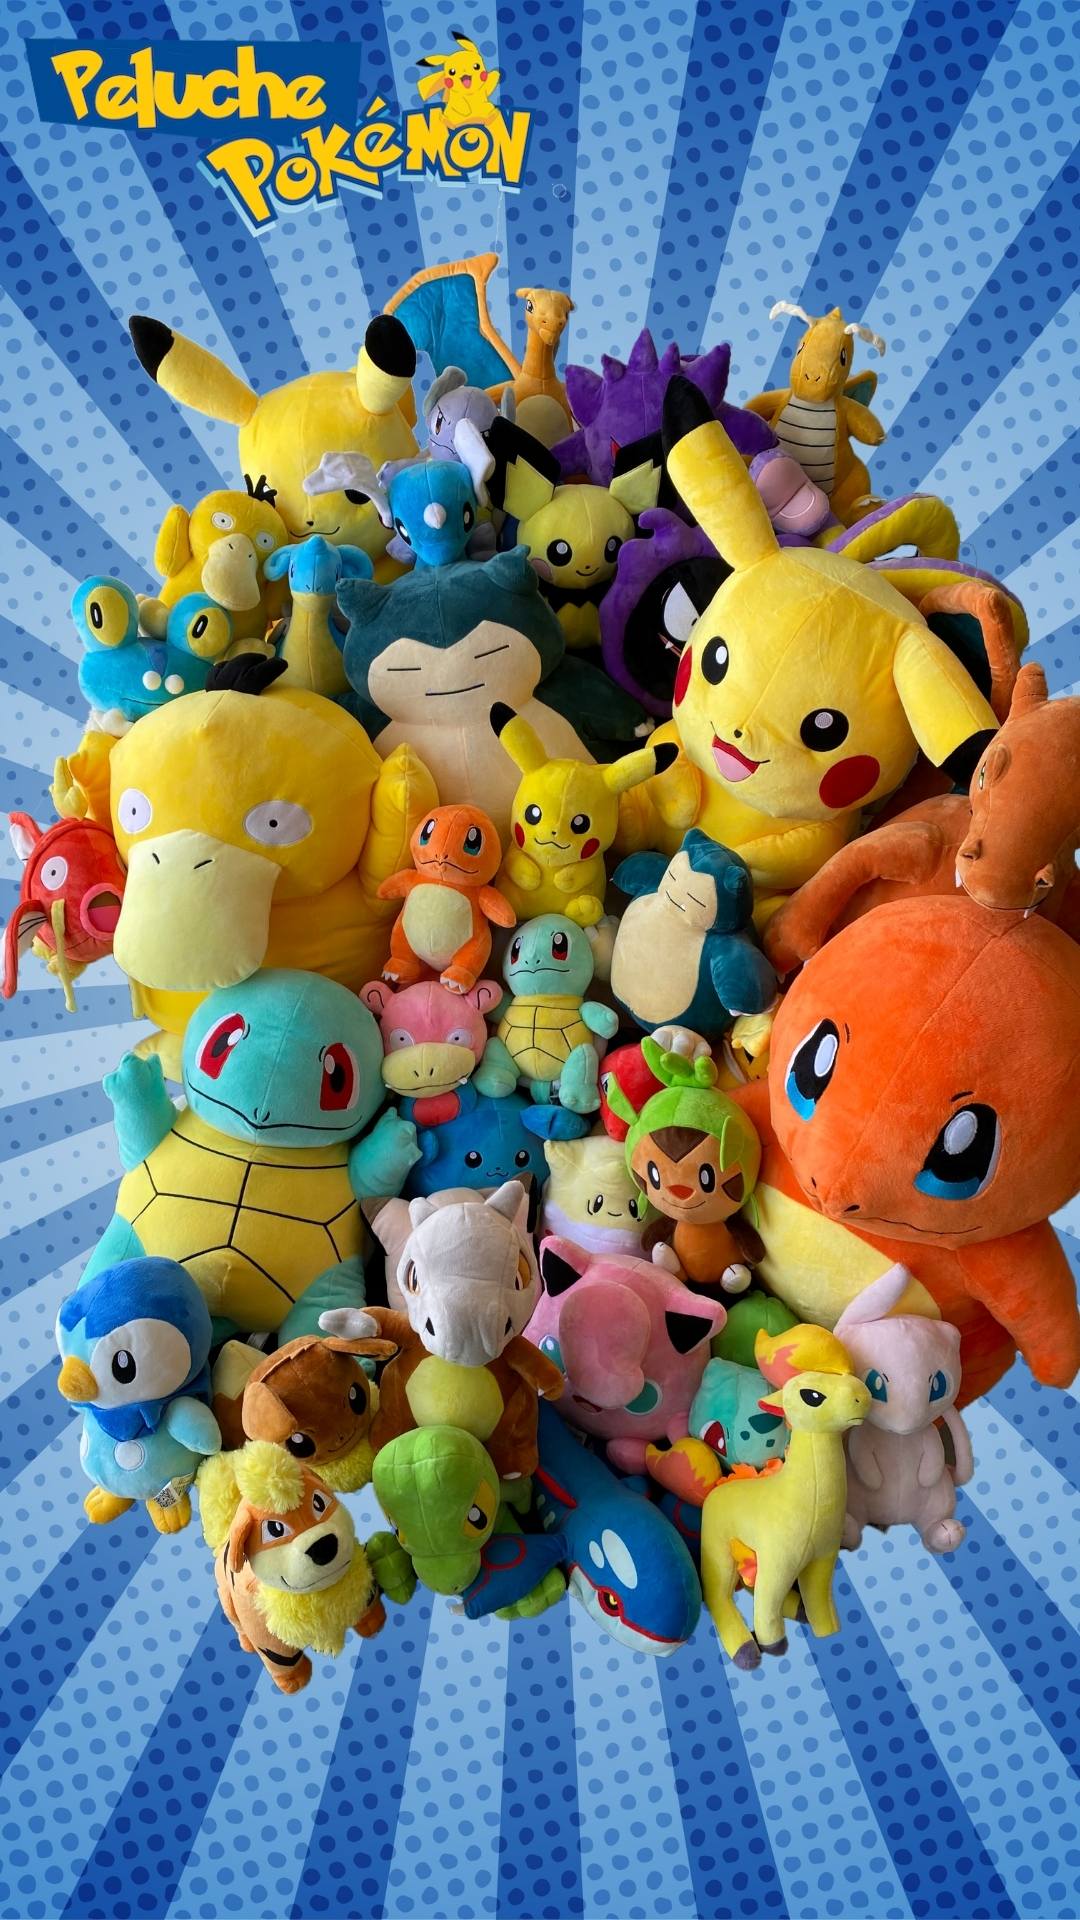 Boutique Pokemon - N°1 Peluche Pokémon Officielle